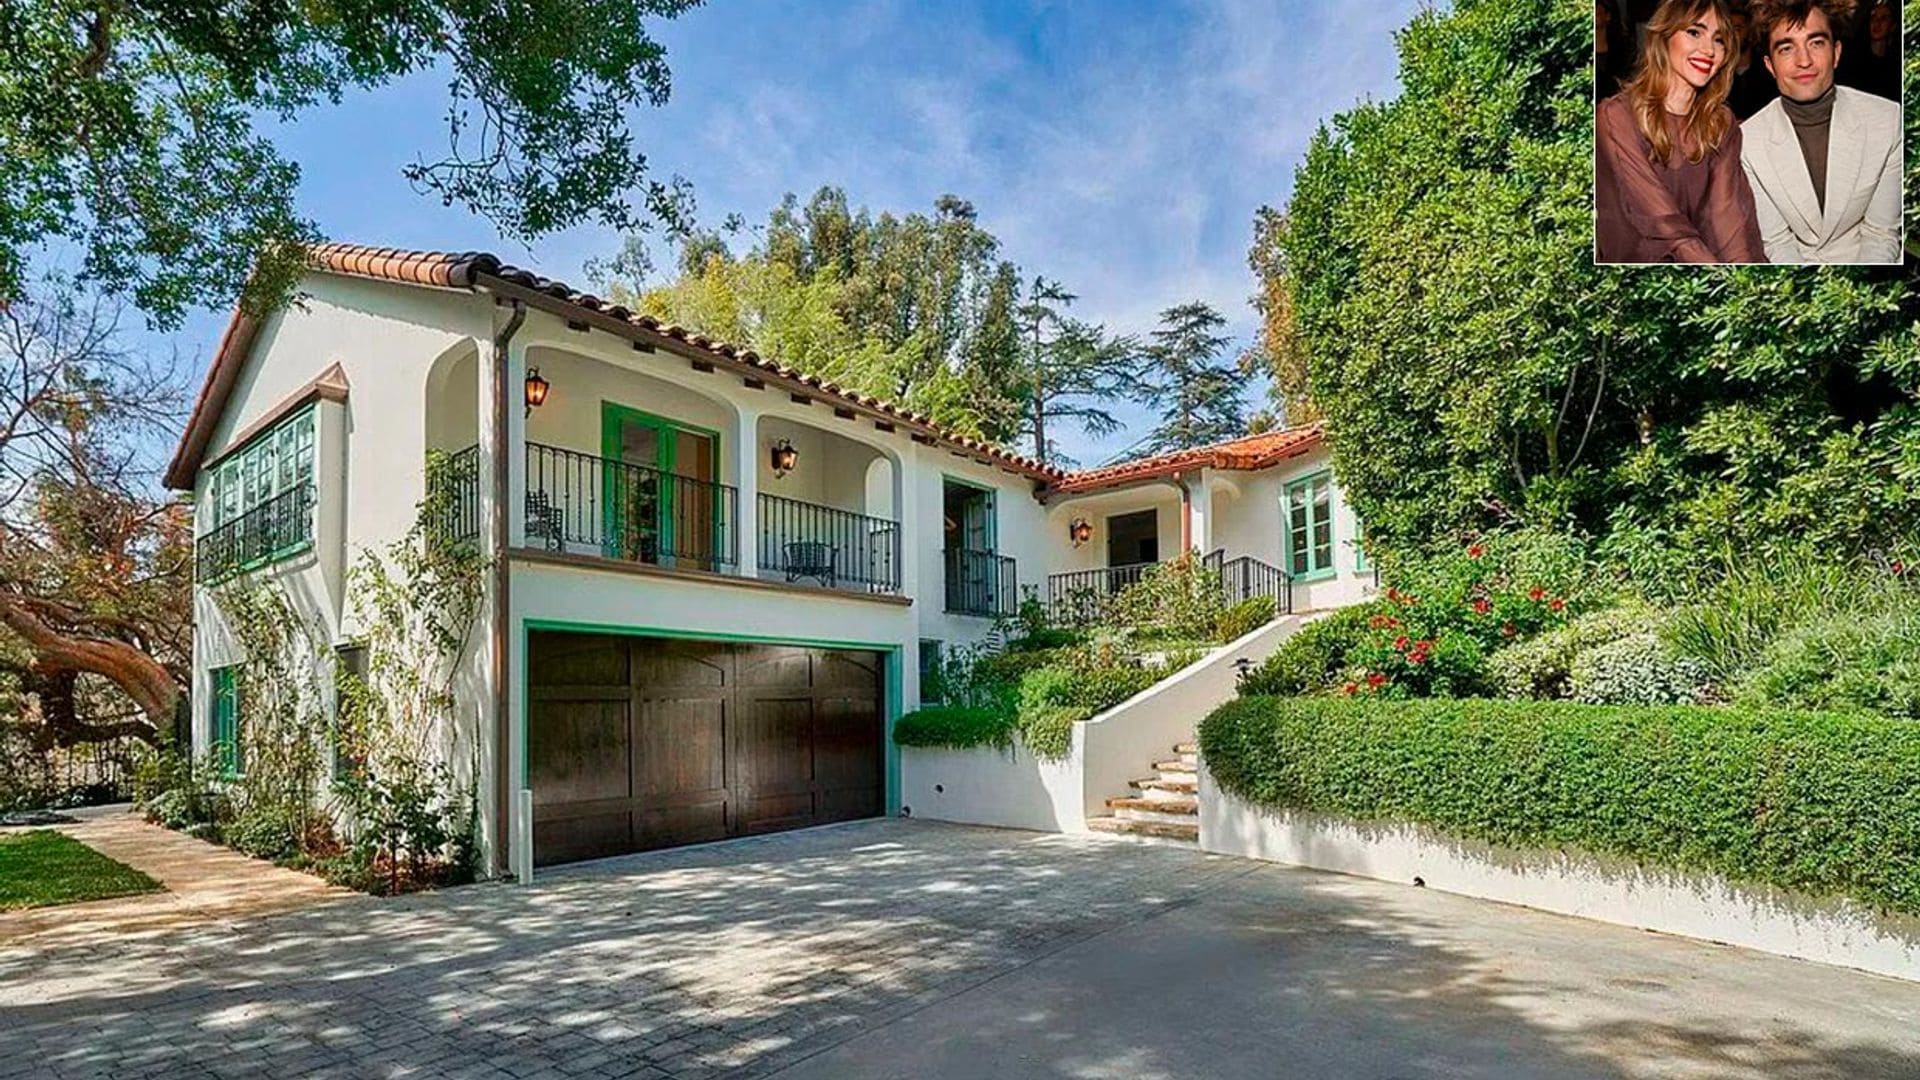 Descubre la nueva casa de Robert Pattinson y Suki Waterhouse en Los Angeles